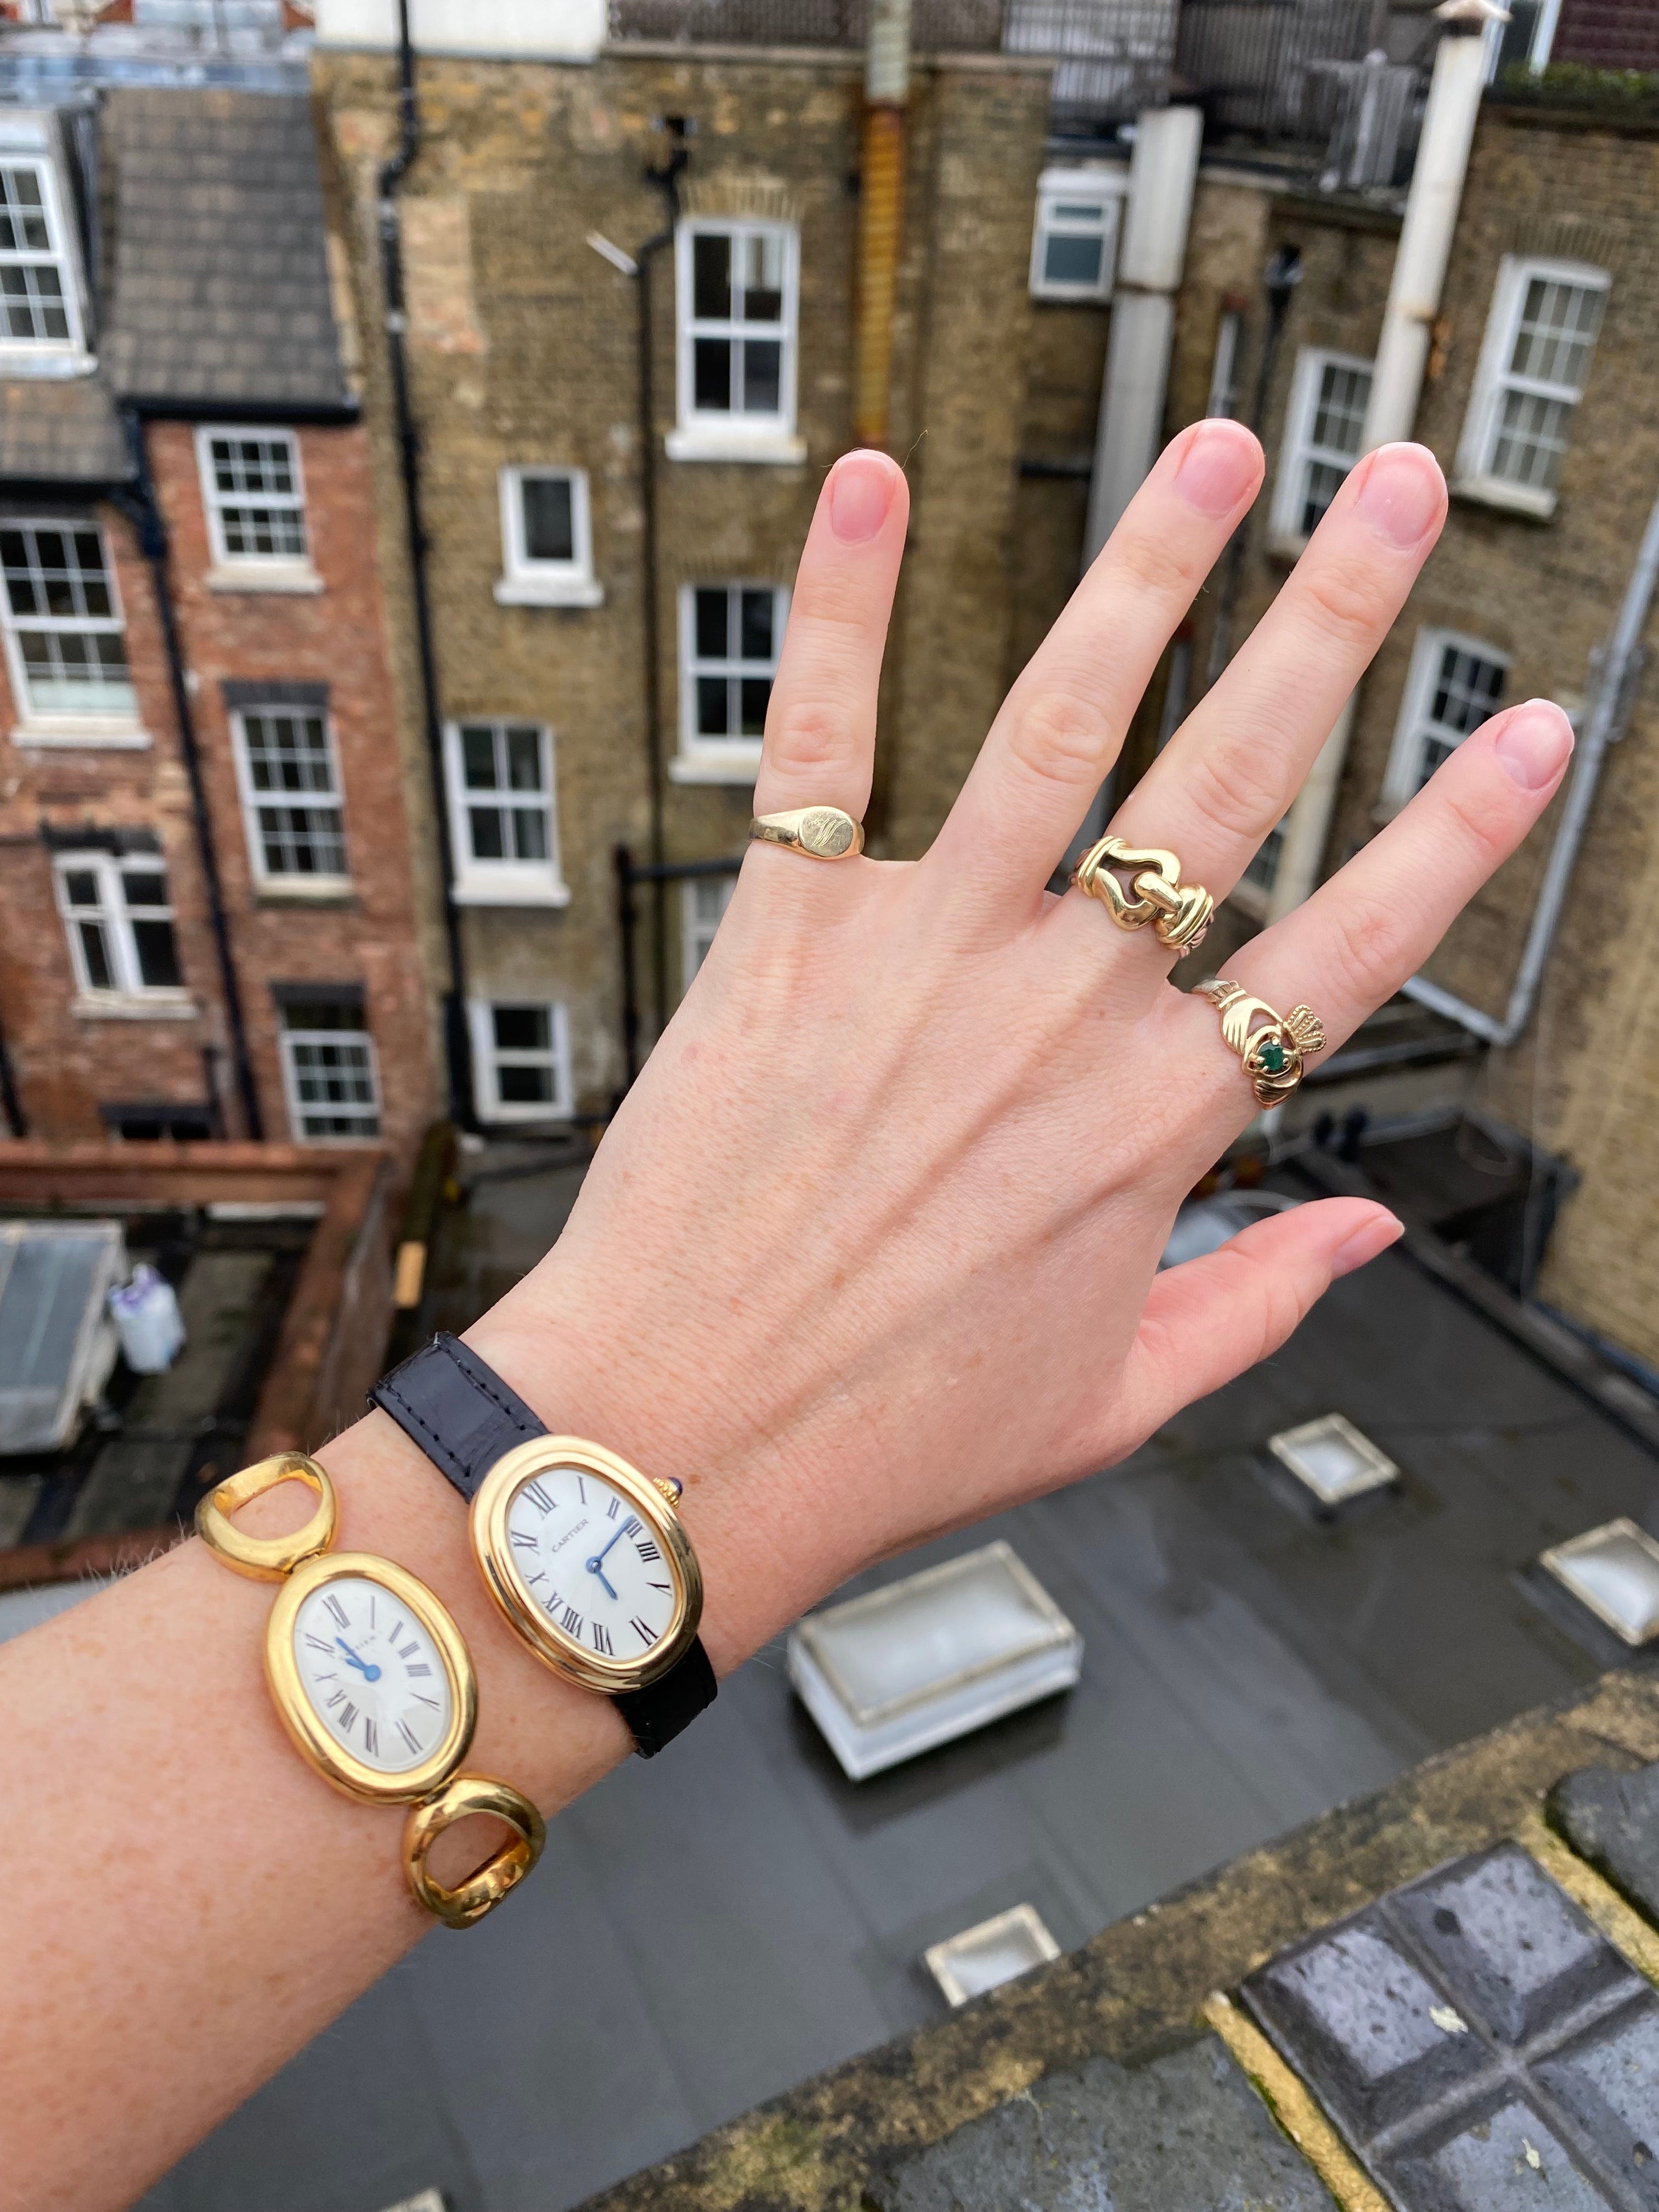 高級腕時計を初めて買う人のための7つのアドバイス | Business Insider ...